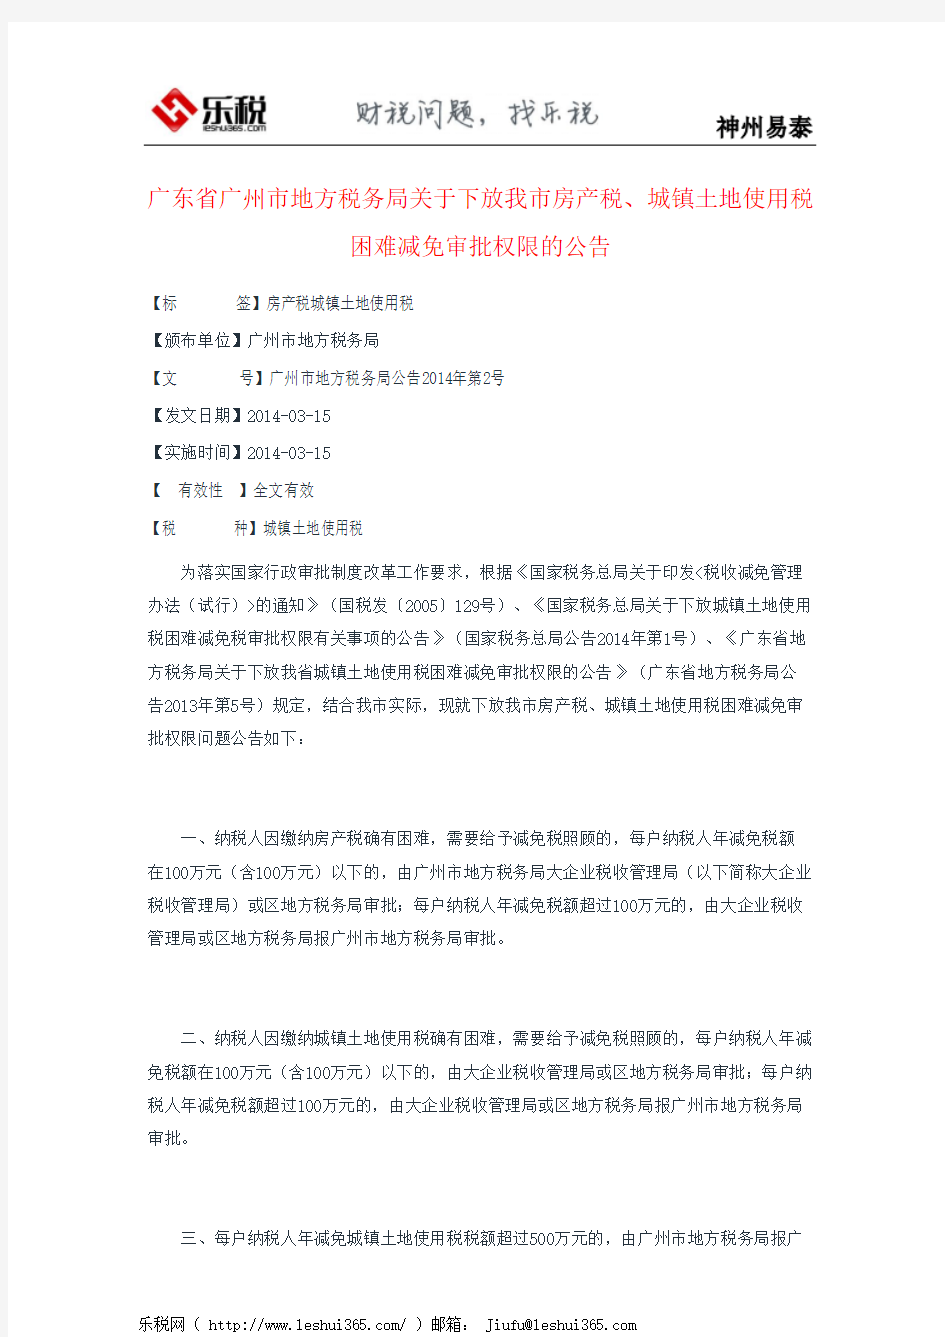 广东省广州市地方税务局关于下放我市房产税、城镇土地使用税困难